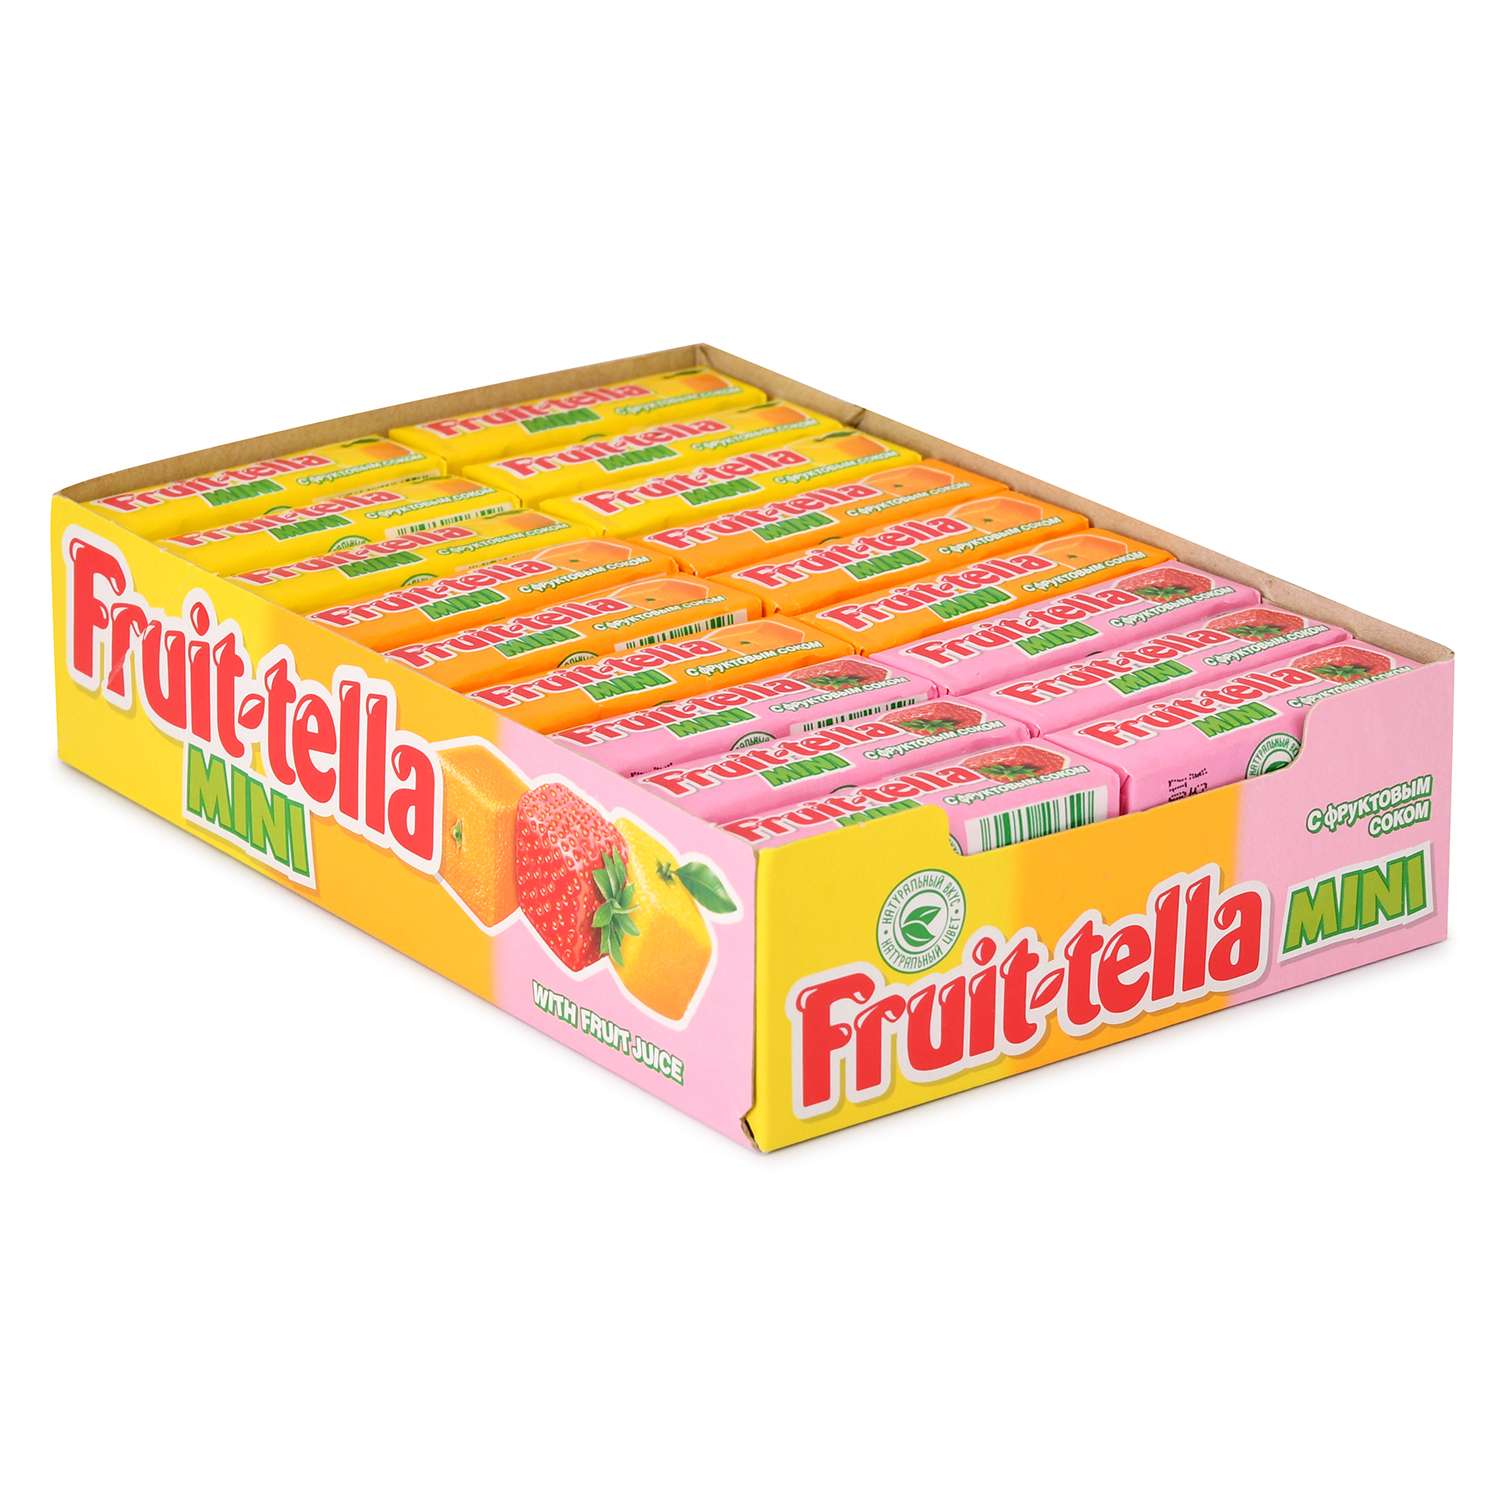 Конфеты жевательные Фруттелла Minni с фруктовым соком 11г в ассортименте - фото 2